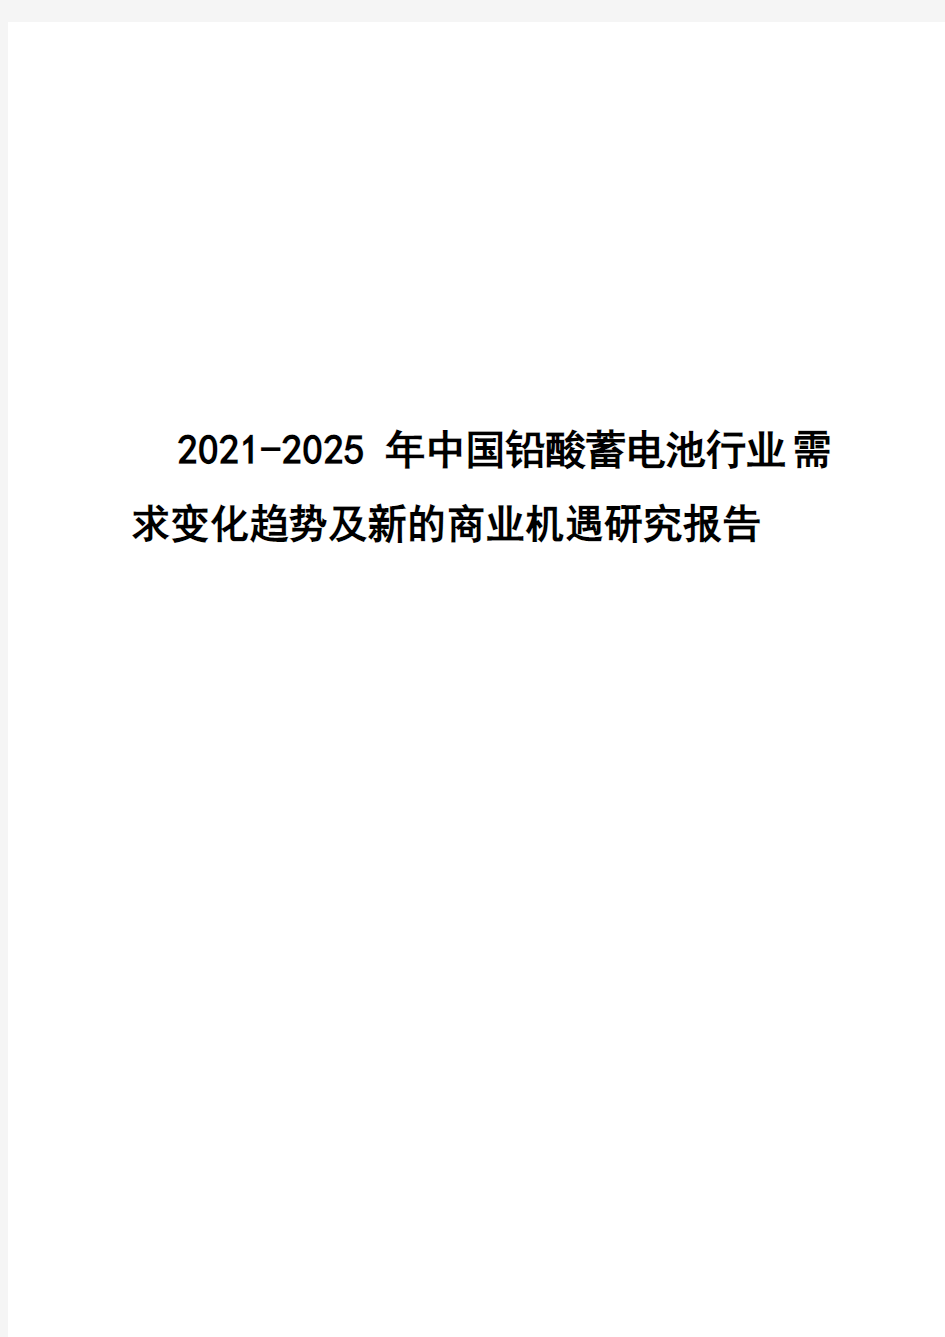 2021-2025年中国铅酸蓄电池行业需求变化趋势及新的商业机遇研究报告( word 版)